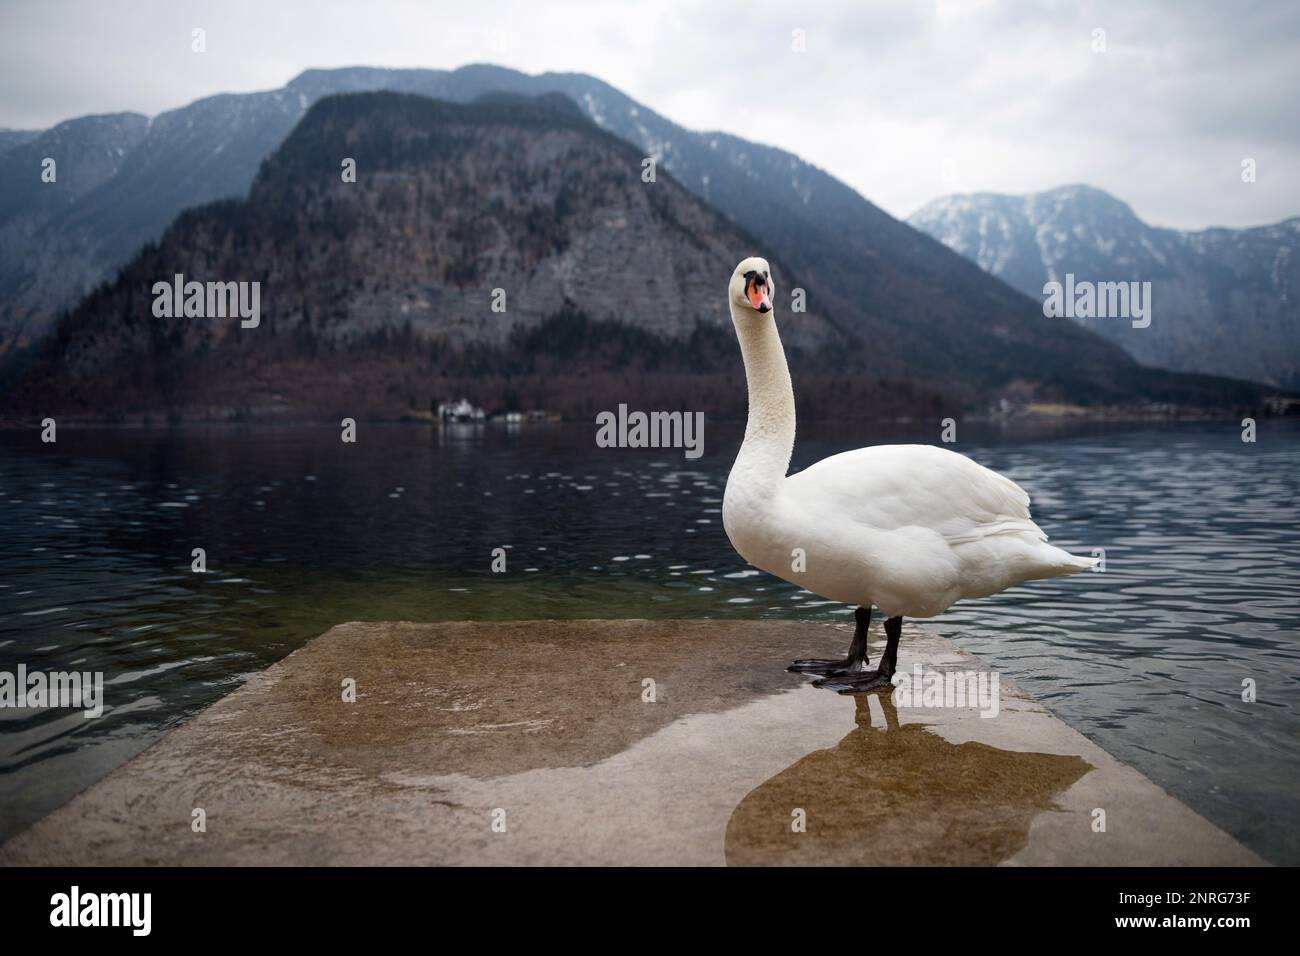 Beautiful swan on Halltstatter see lake near Hallstatt village, Austria Stock Photo